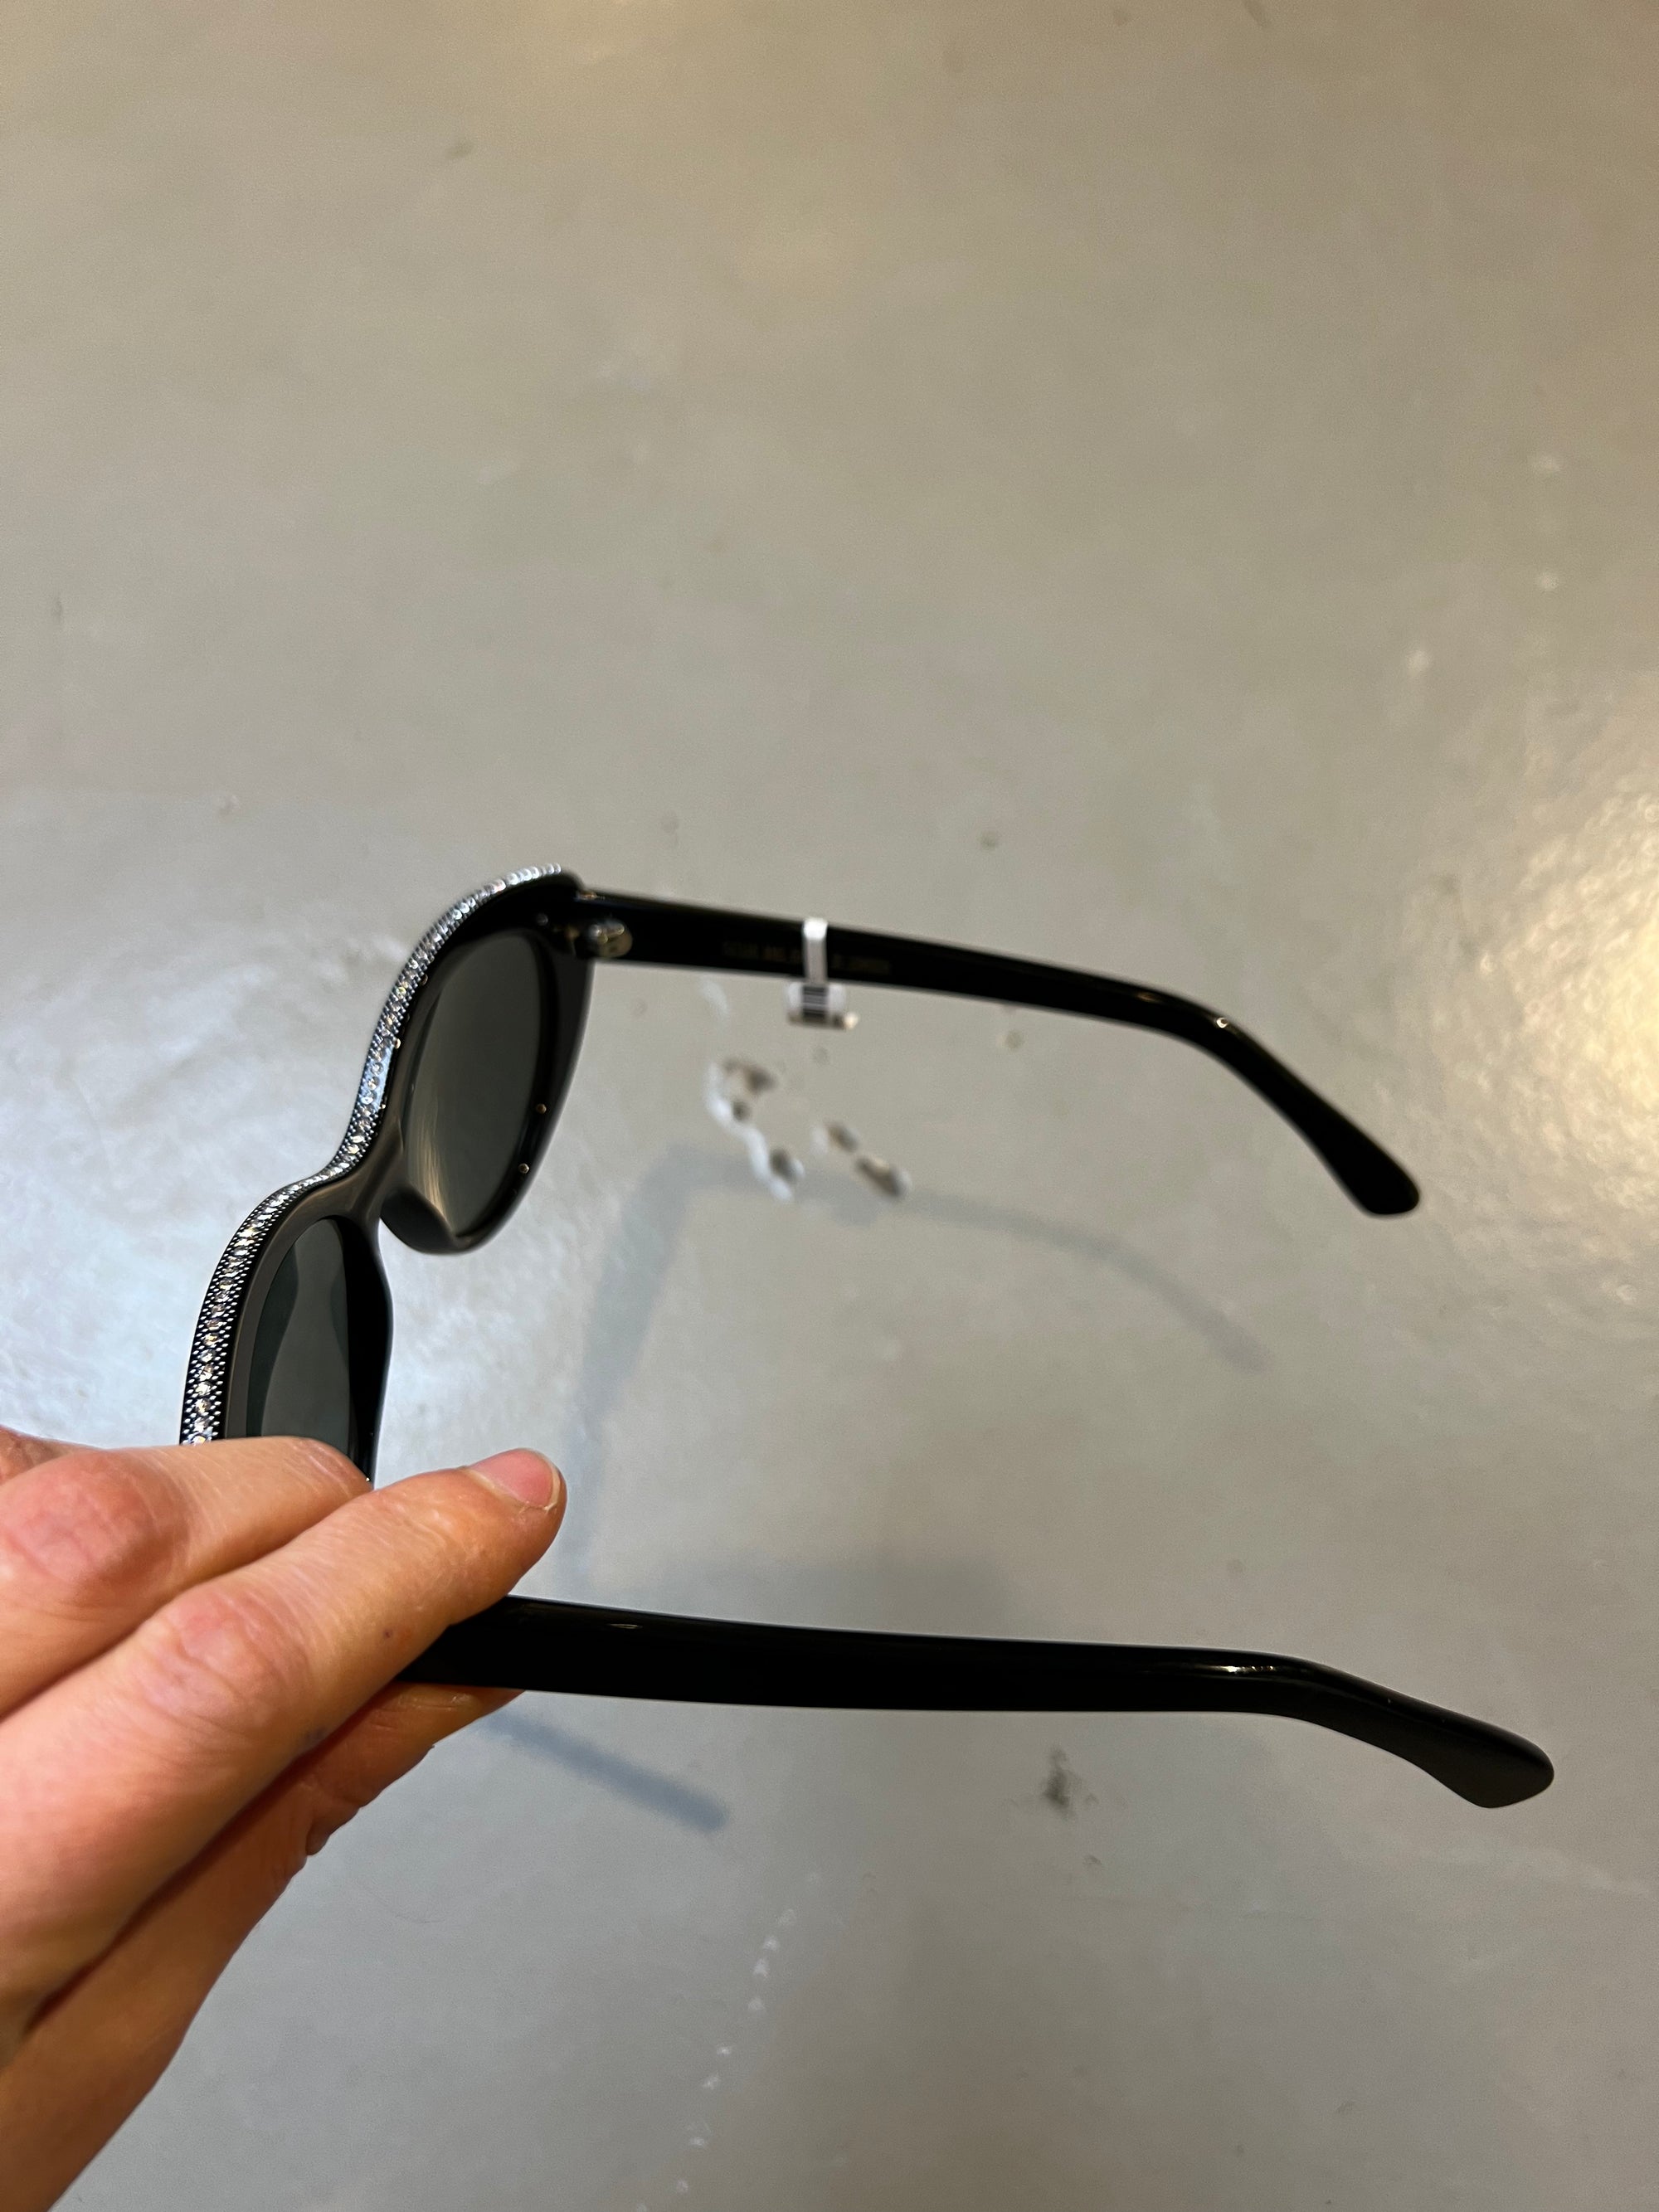 Produktbild der Cutler and Gross Sunglasses Black Glitter von der Seite vor grauem Hintergrund.